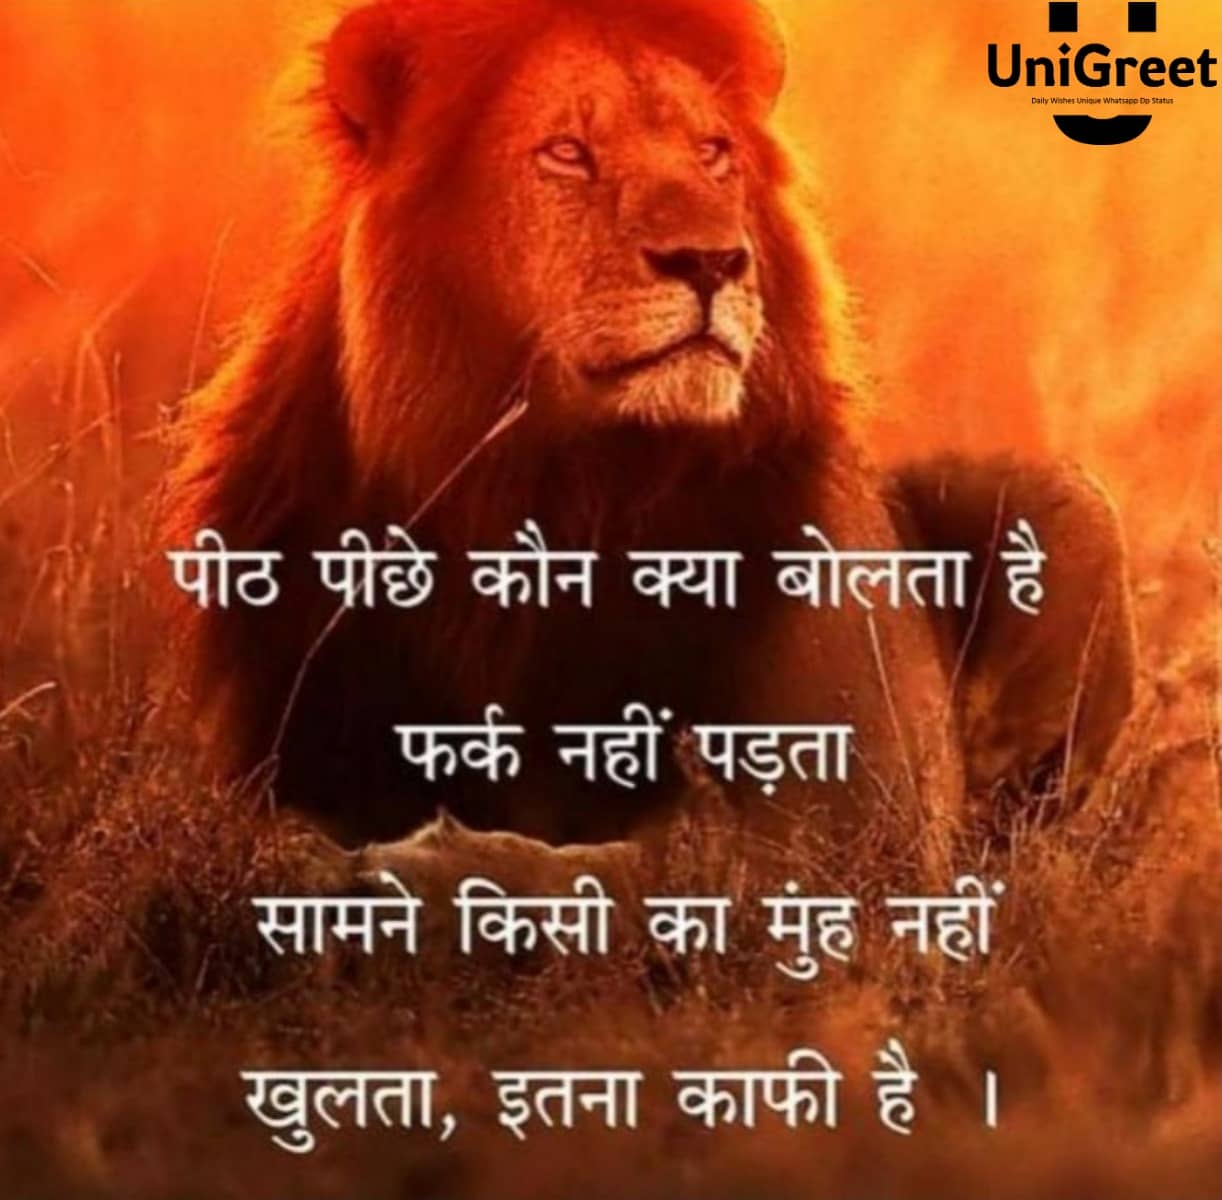 BEST Hindi Attitude Quotes Images, Shayari, Status & Dp Pictures